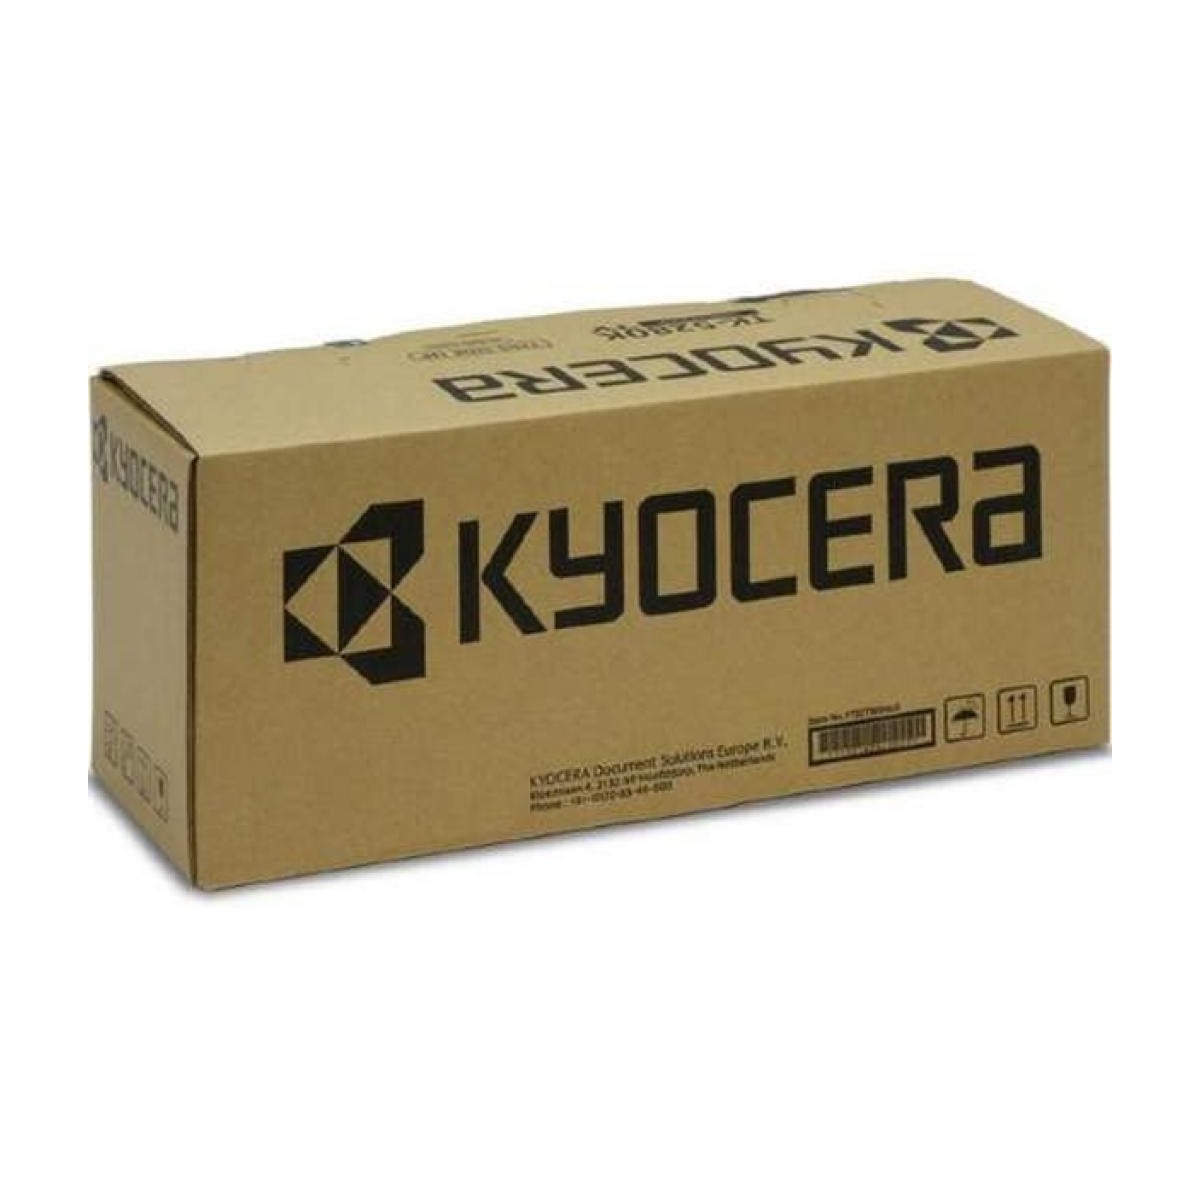 Kyocera DR-711 - 1 pc(s)